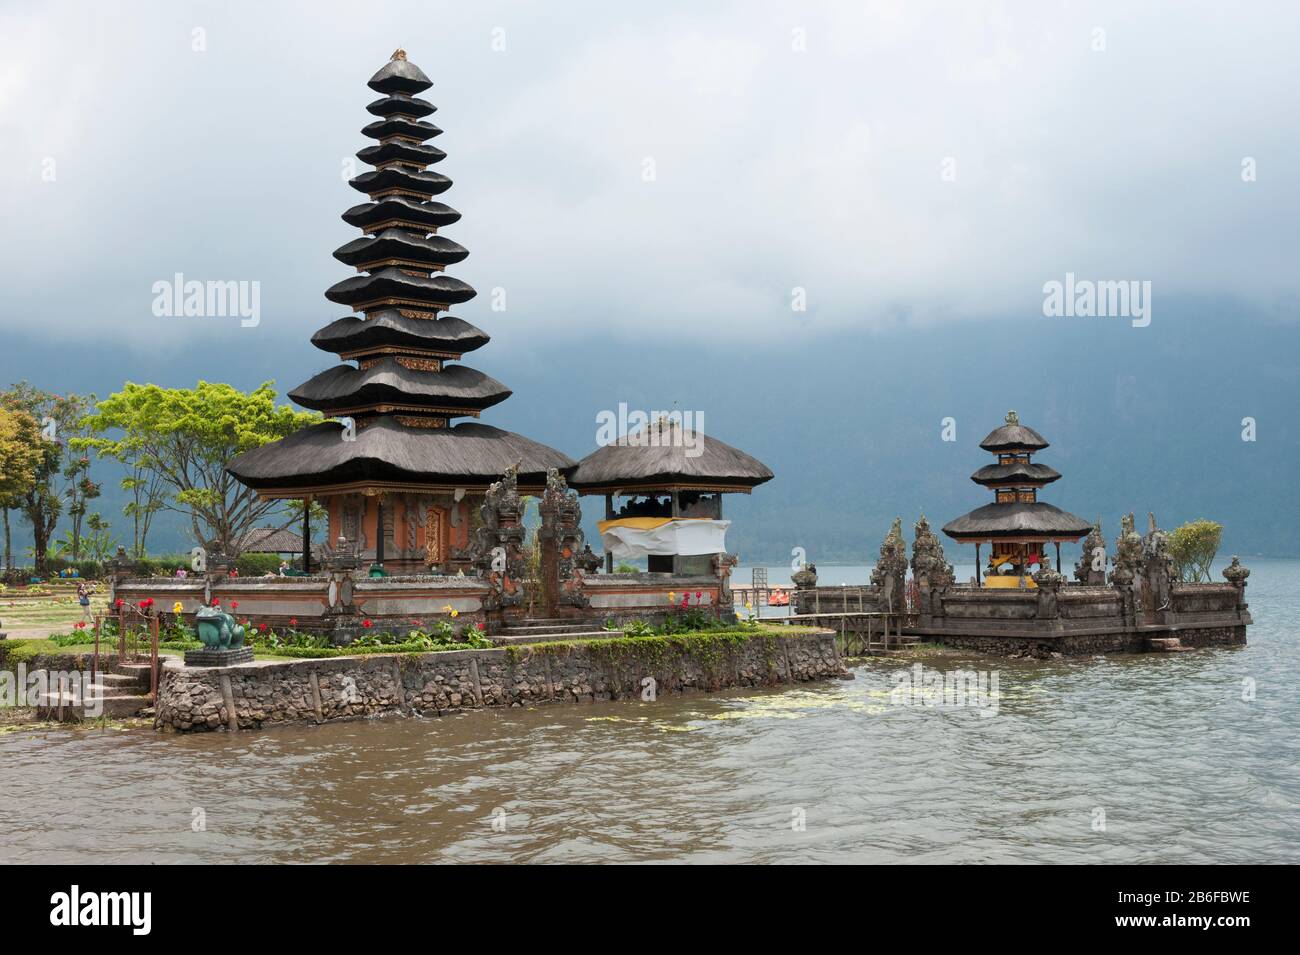 Pura Ulun Danu Bratan temple on the edge of Lake Bratan, Baturiti, Bali, Indonesia Stock Photo